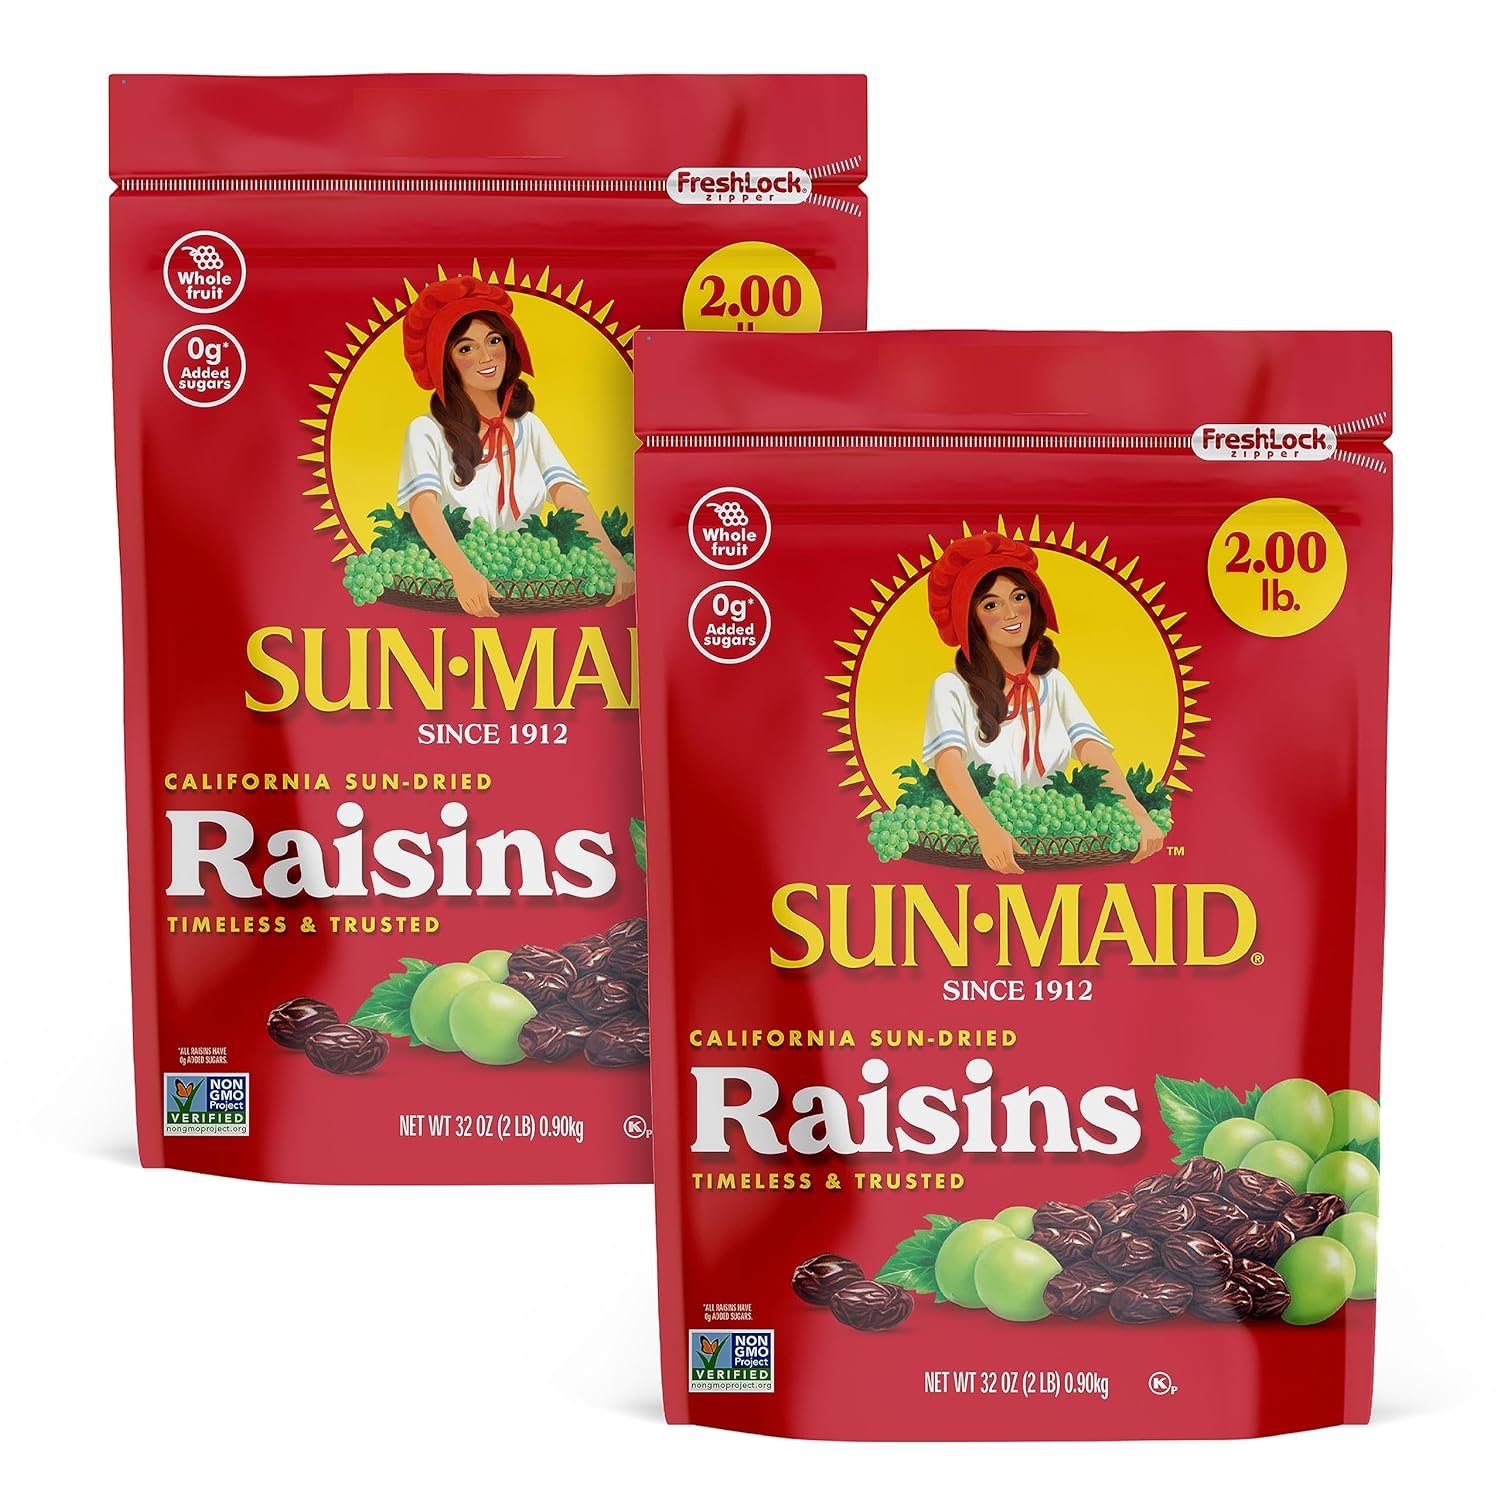 Sun-Dried Raisins*